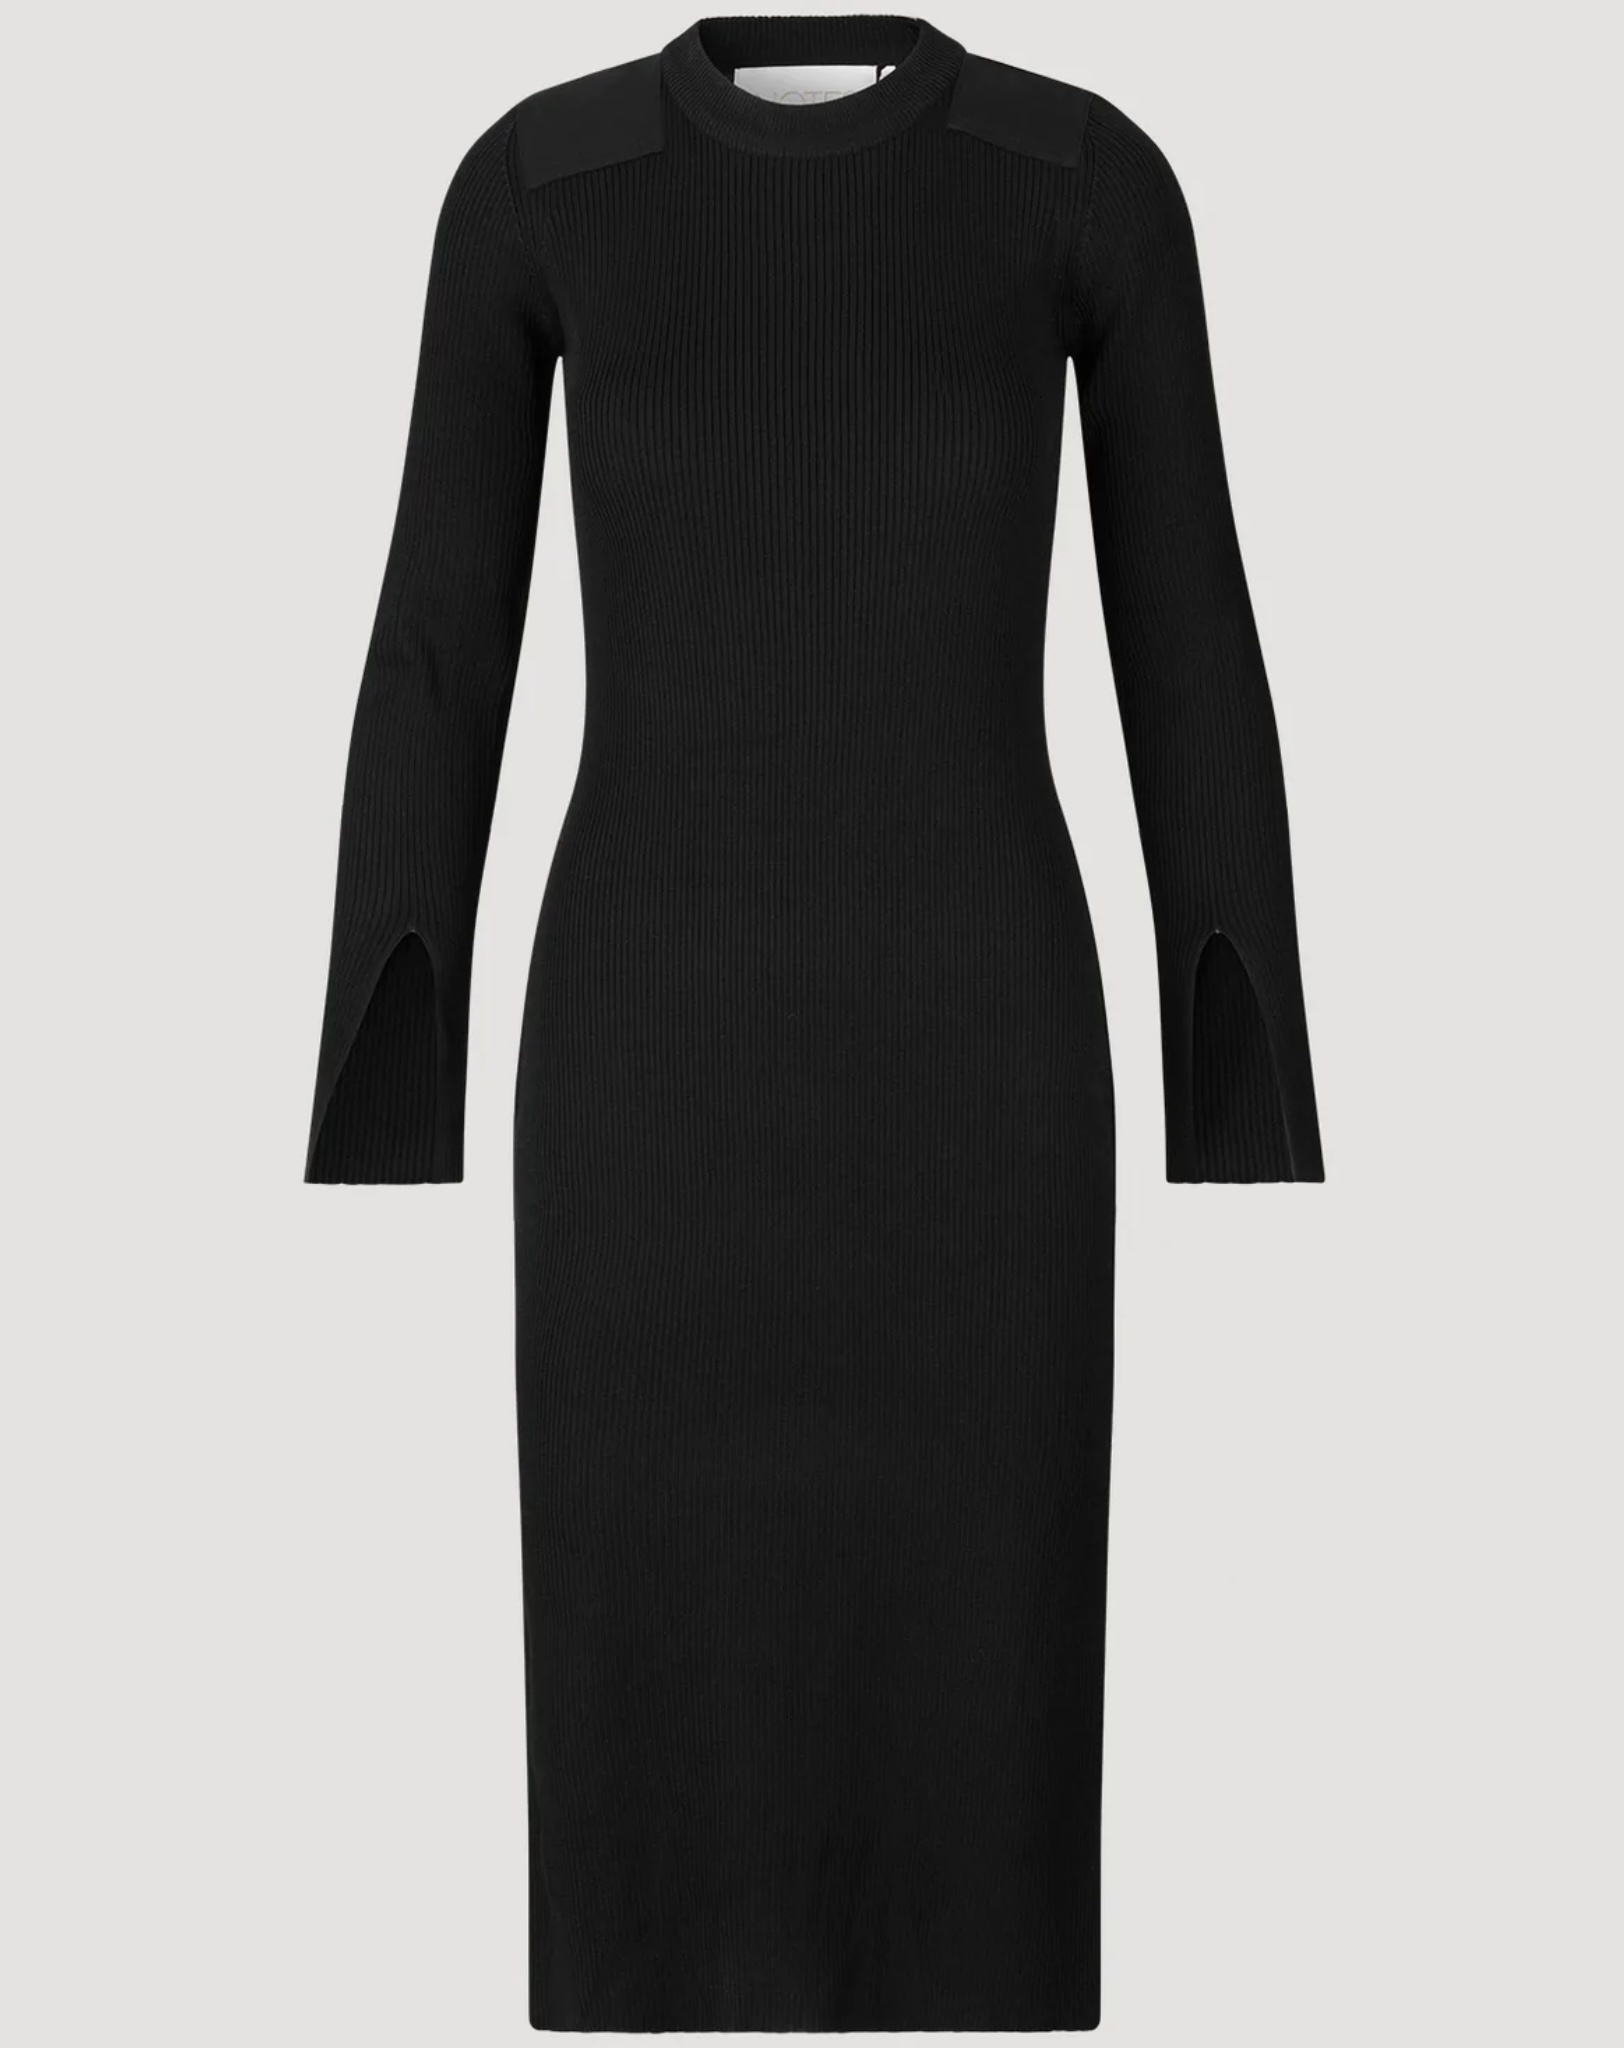 Elena knitted dress black-3